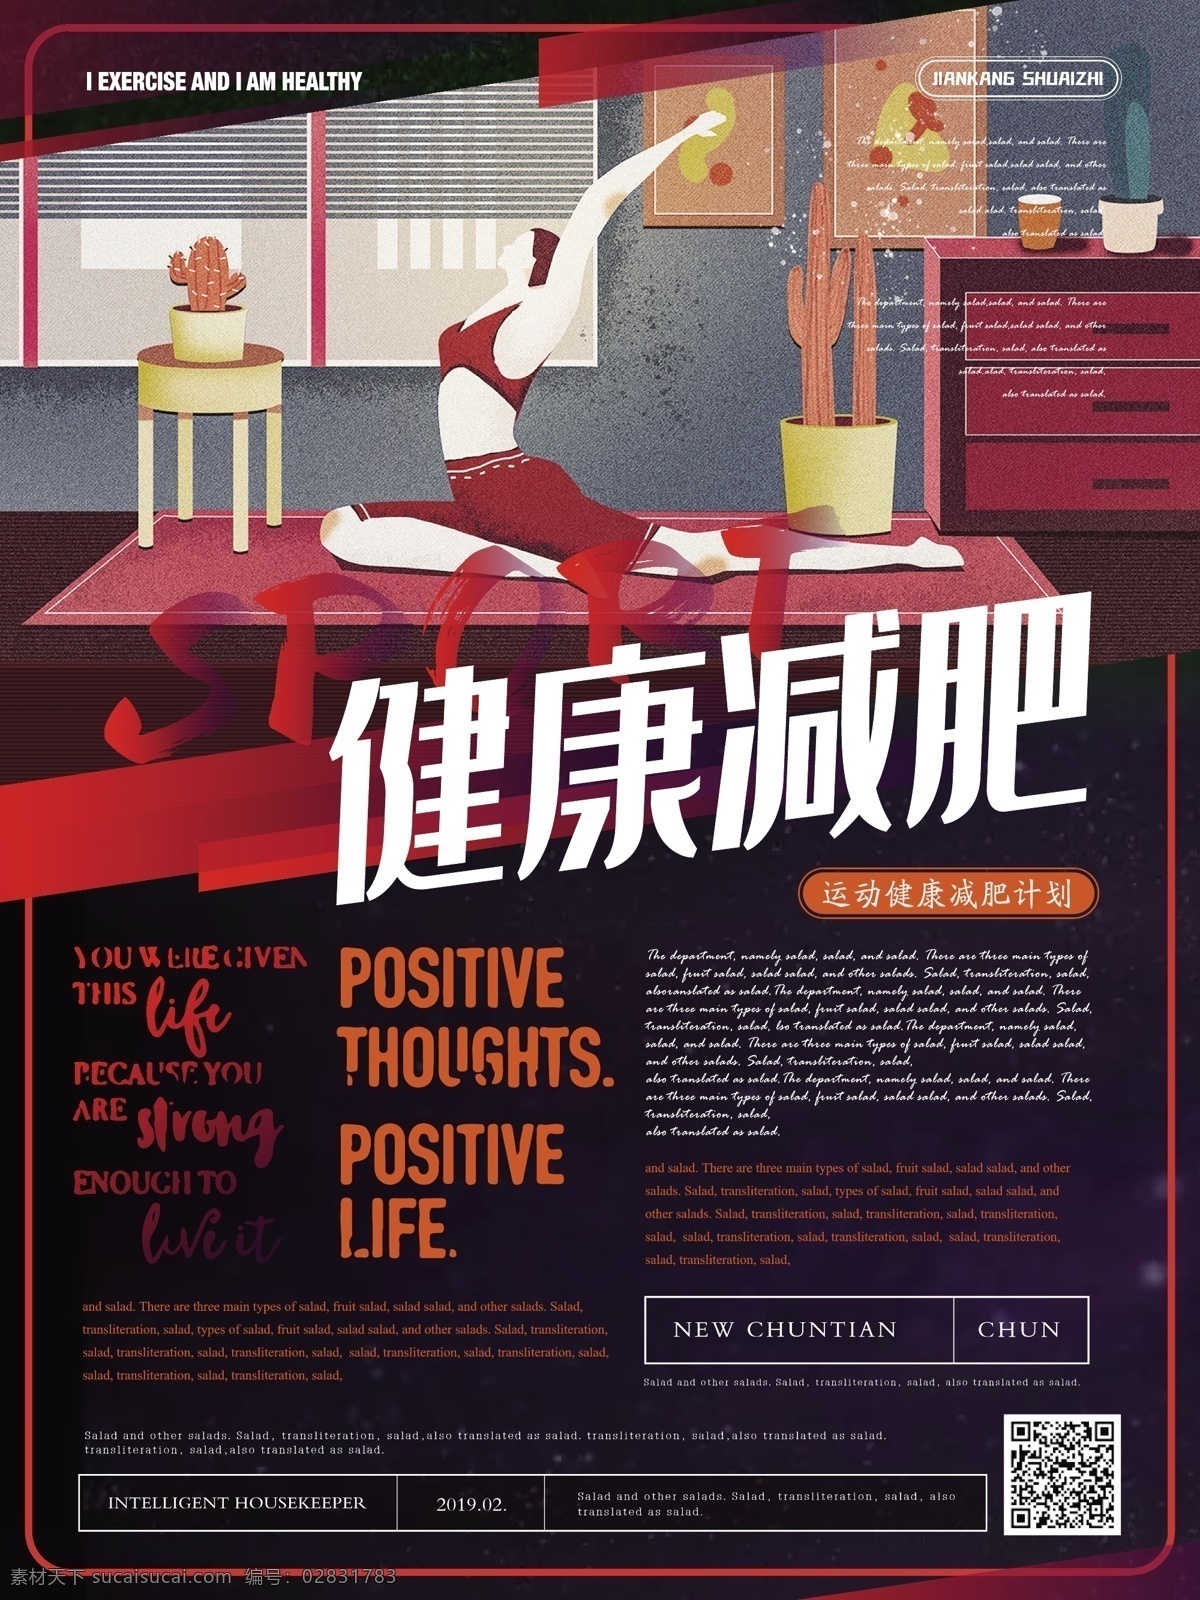 简约 活力 健康 减肥 宣传海报 简约风 瑜伽 健康减肥 燃烧卡路里 宣传 海报